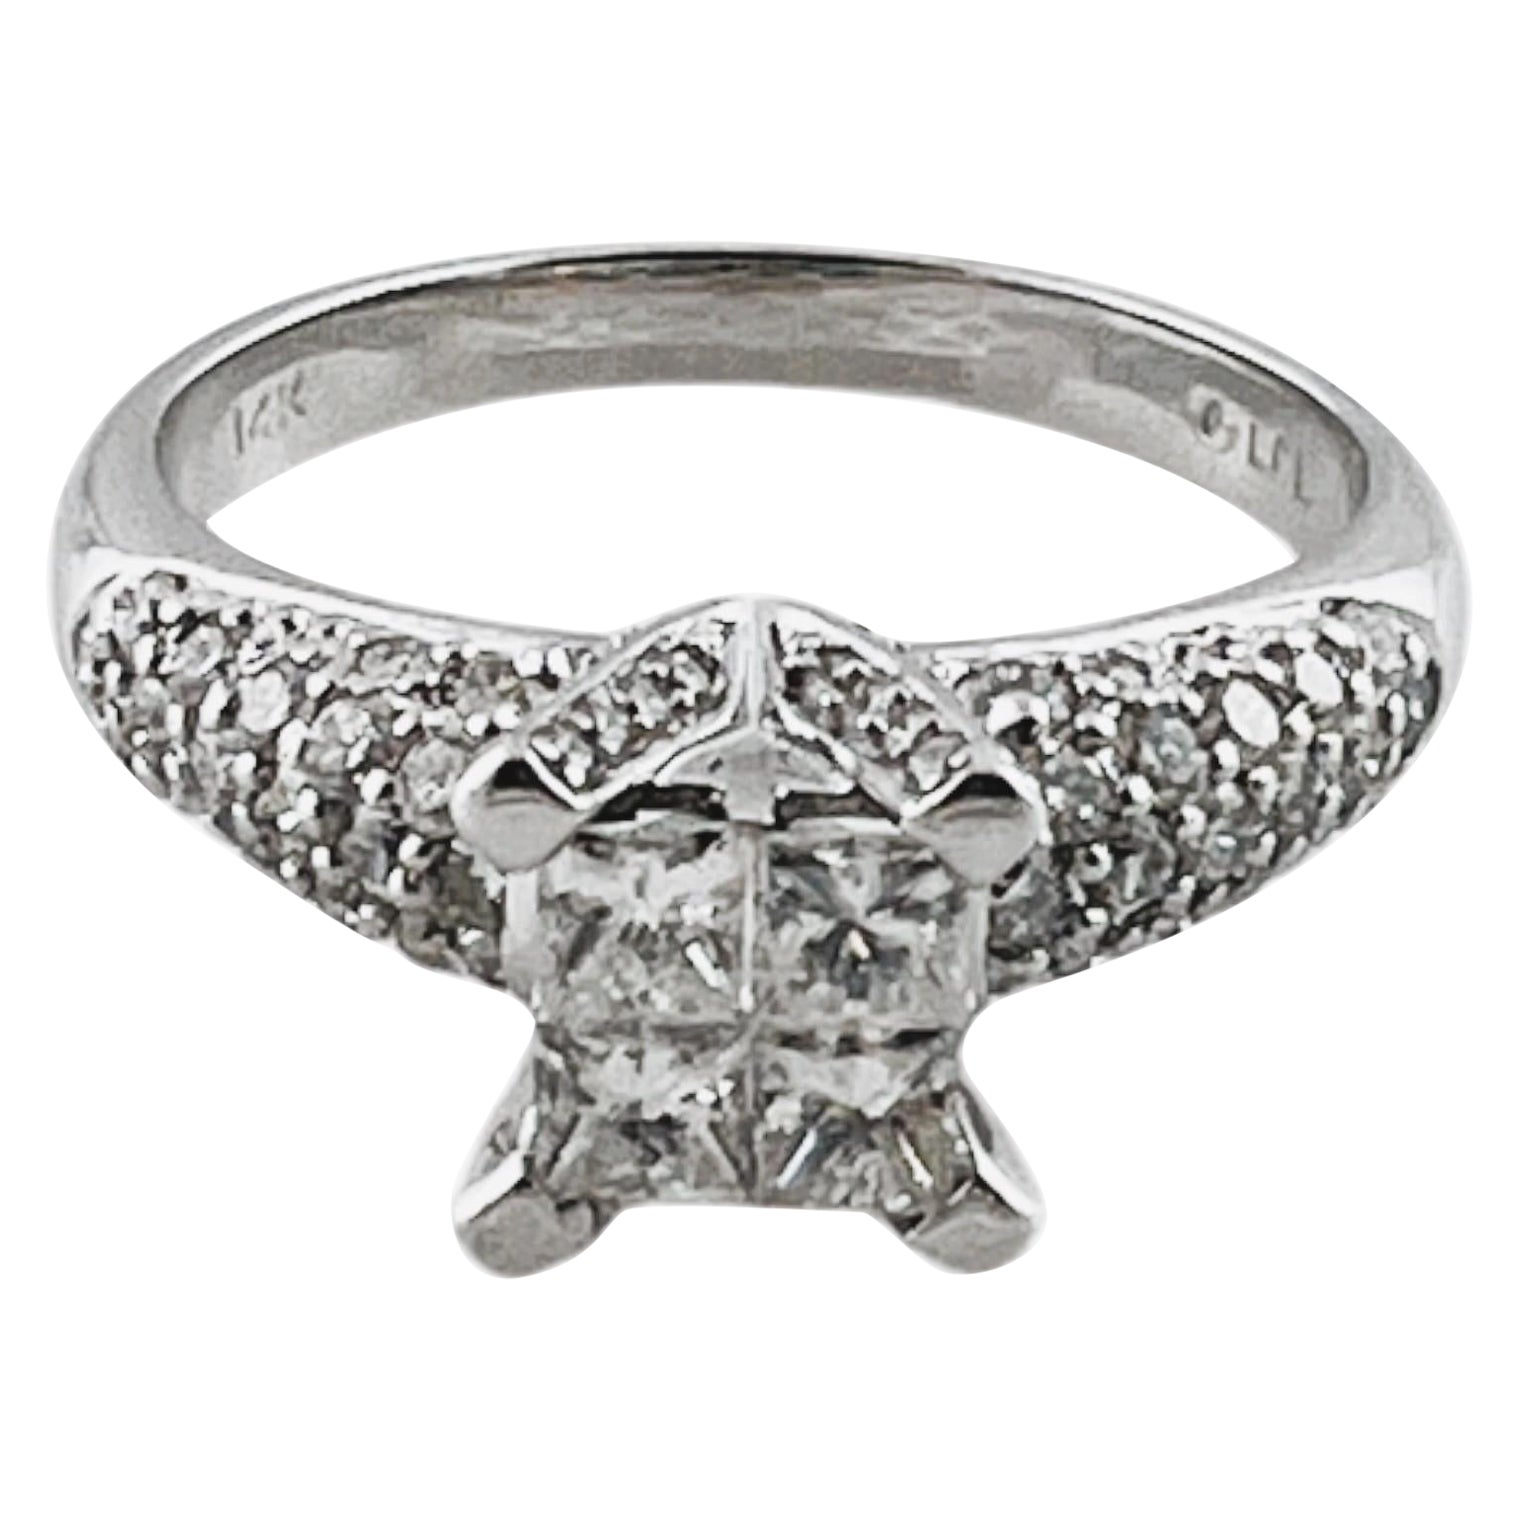 14K White Gold Alfred Levitt Diamond Engagement Ring Size 7 #16483 For Sale